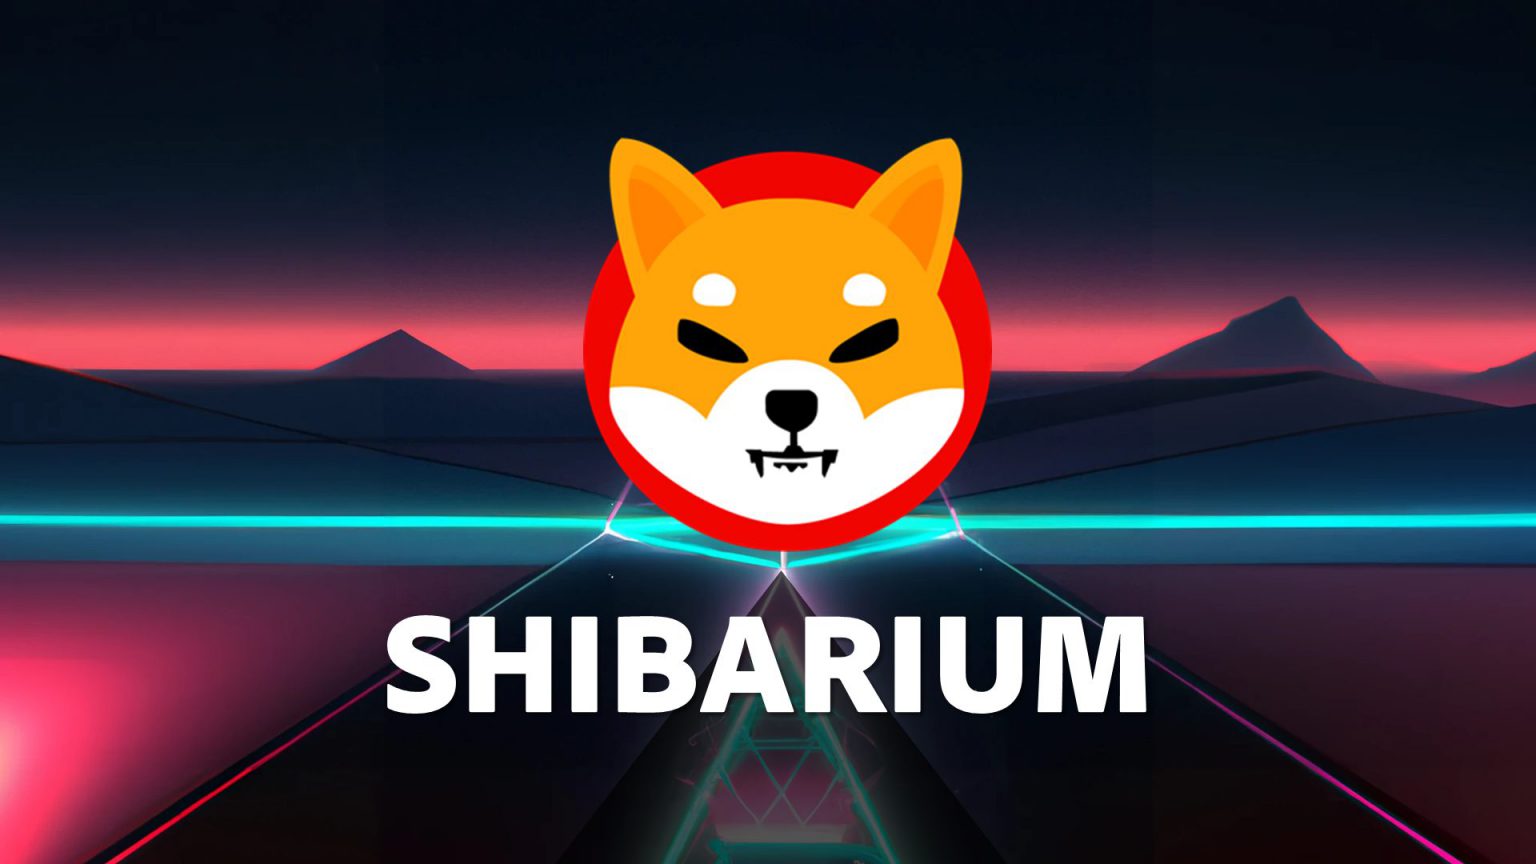 Shibarium Achieves Impressive Milestones Ahead of Mainnet Launch